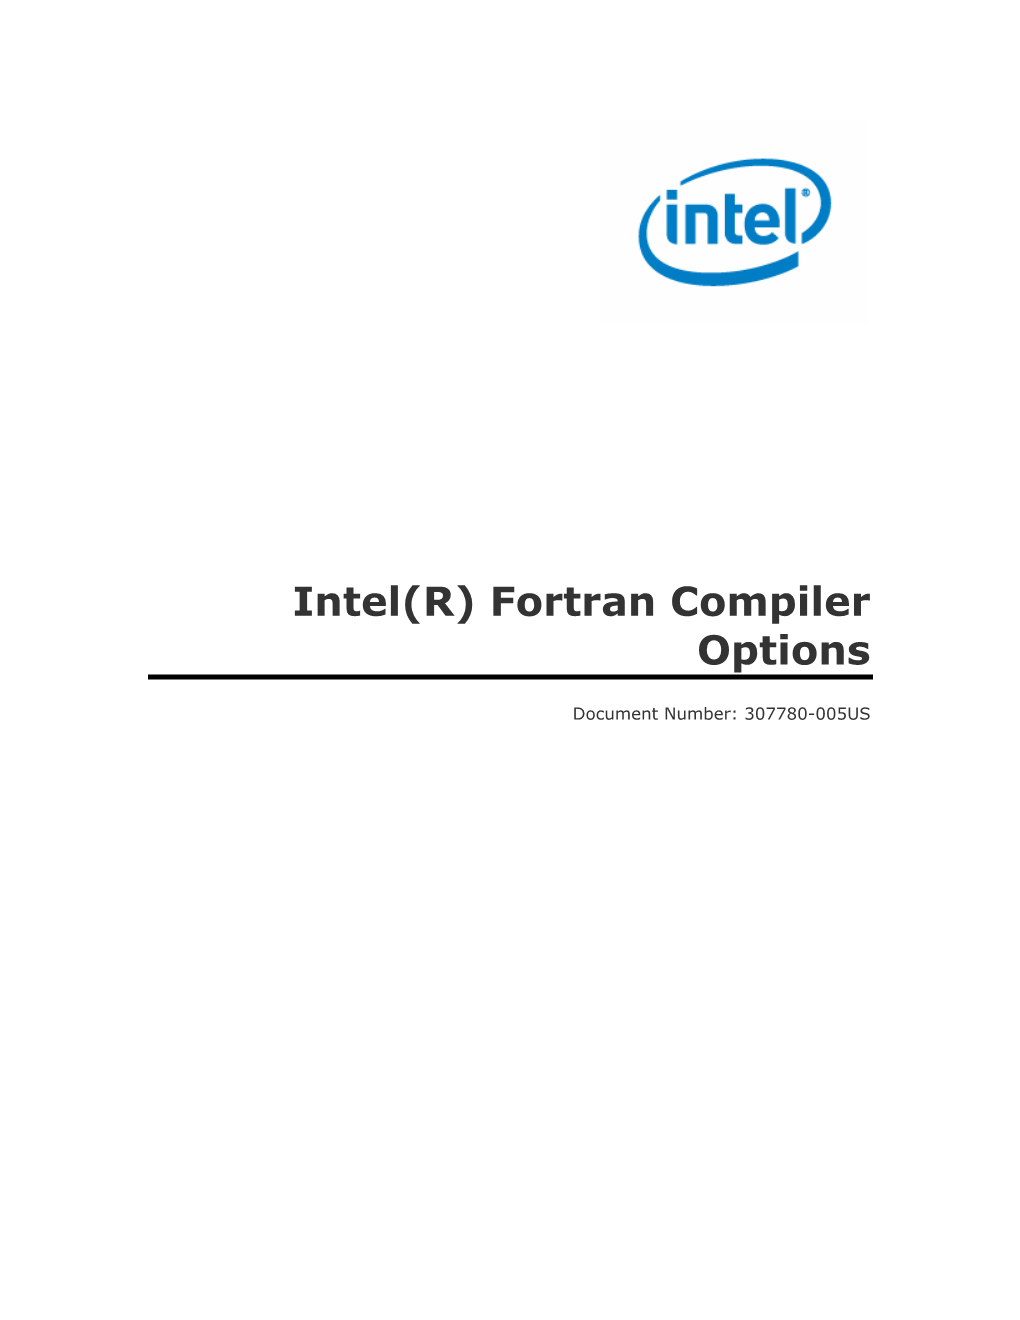 Intel(R) Fortran Compiler Options